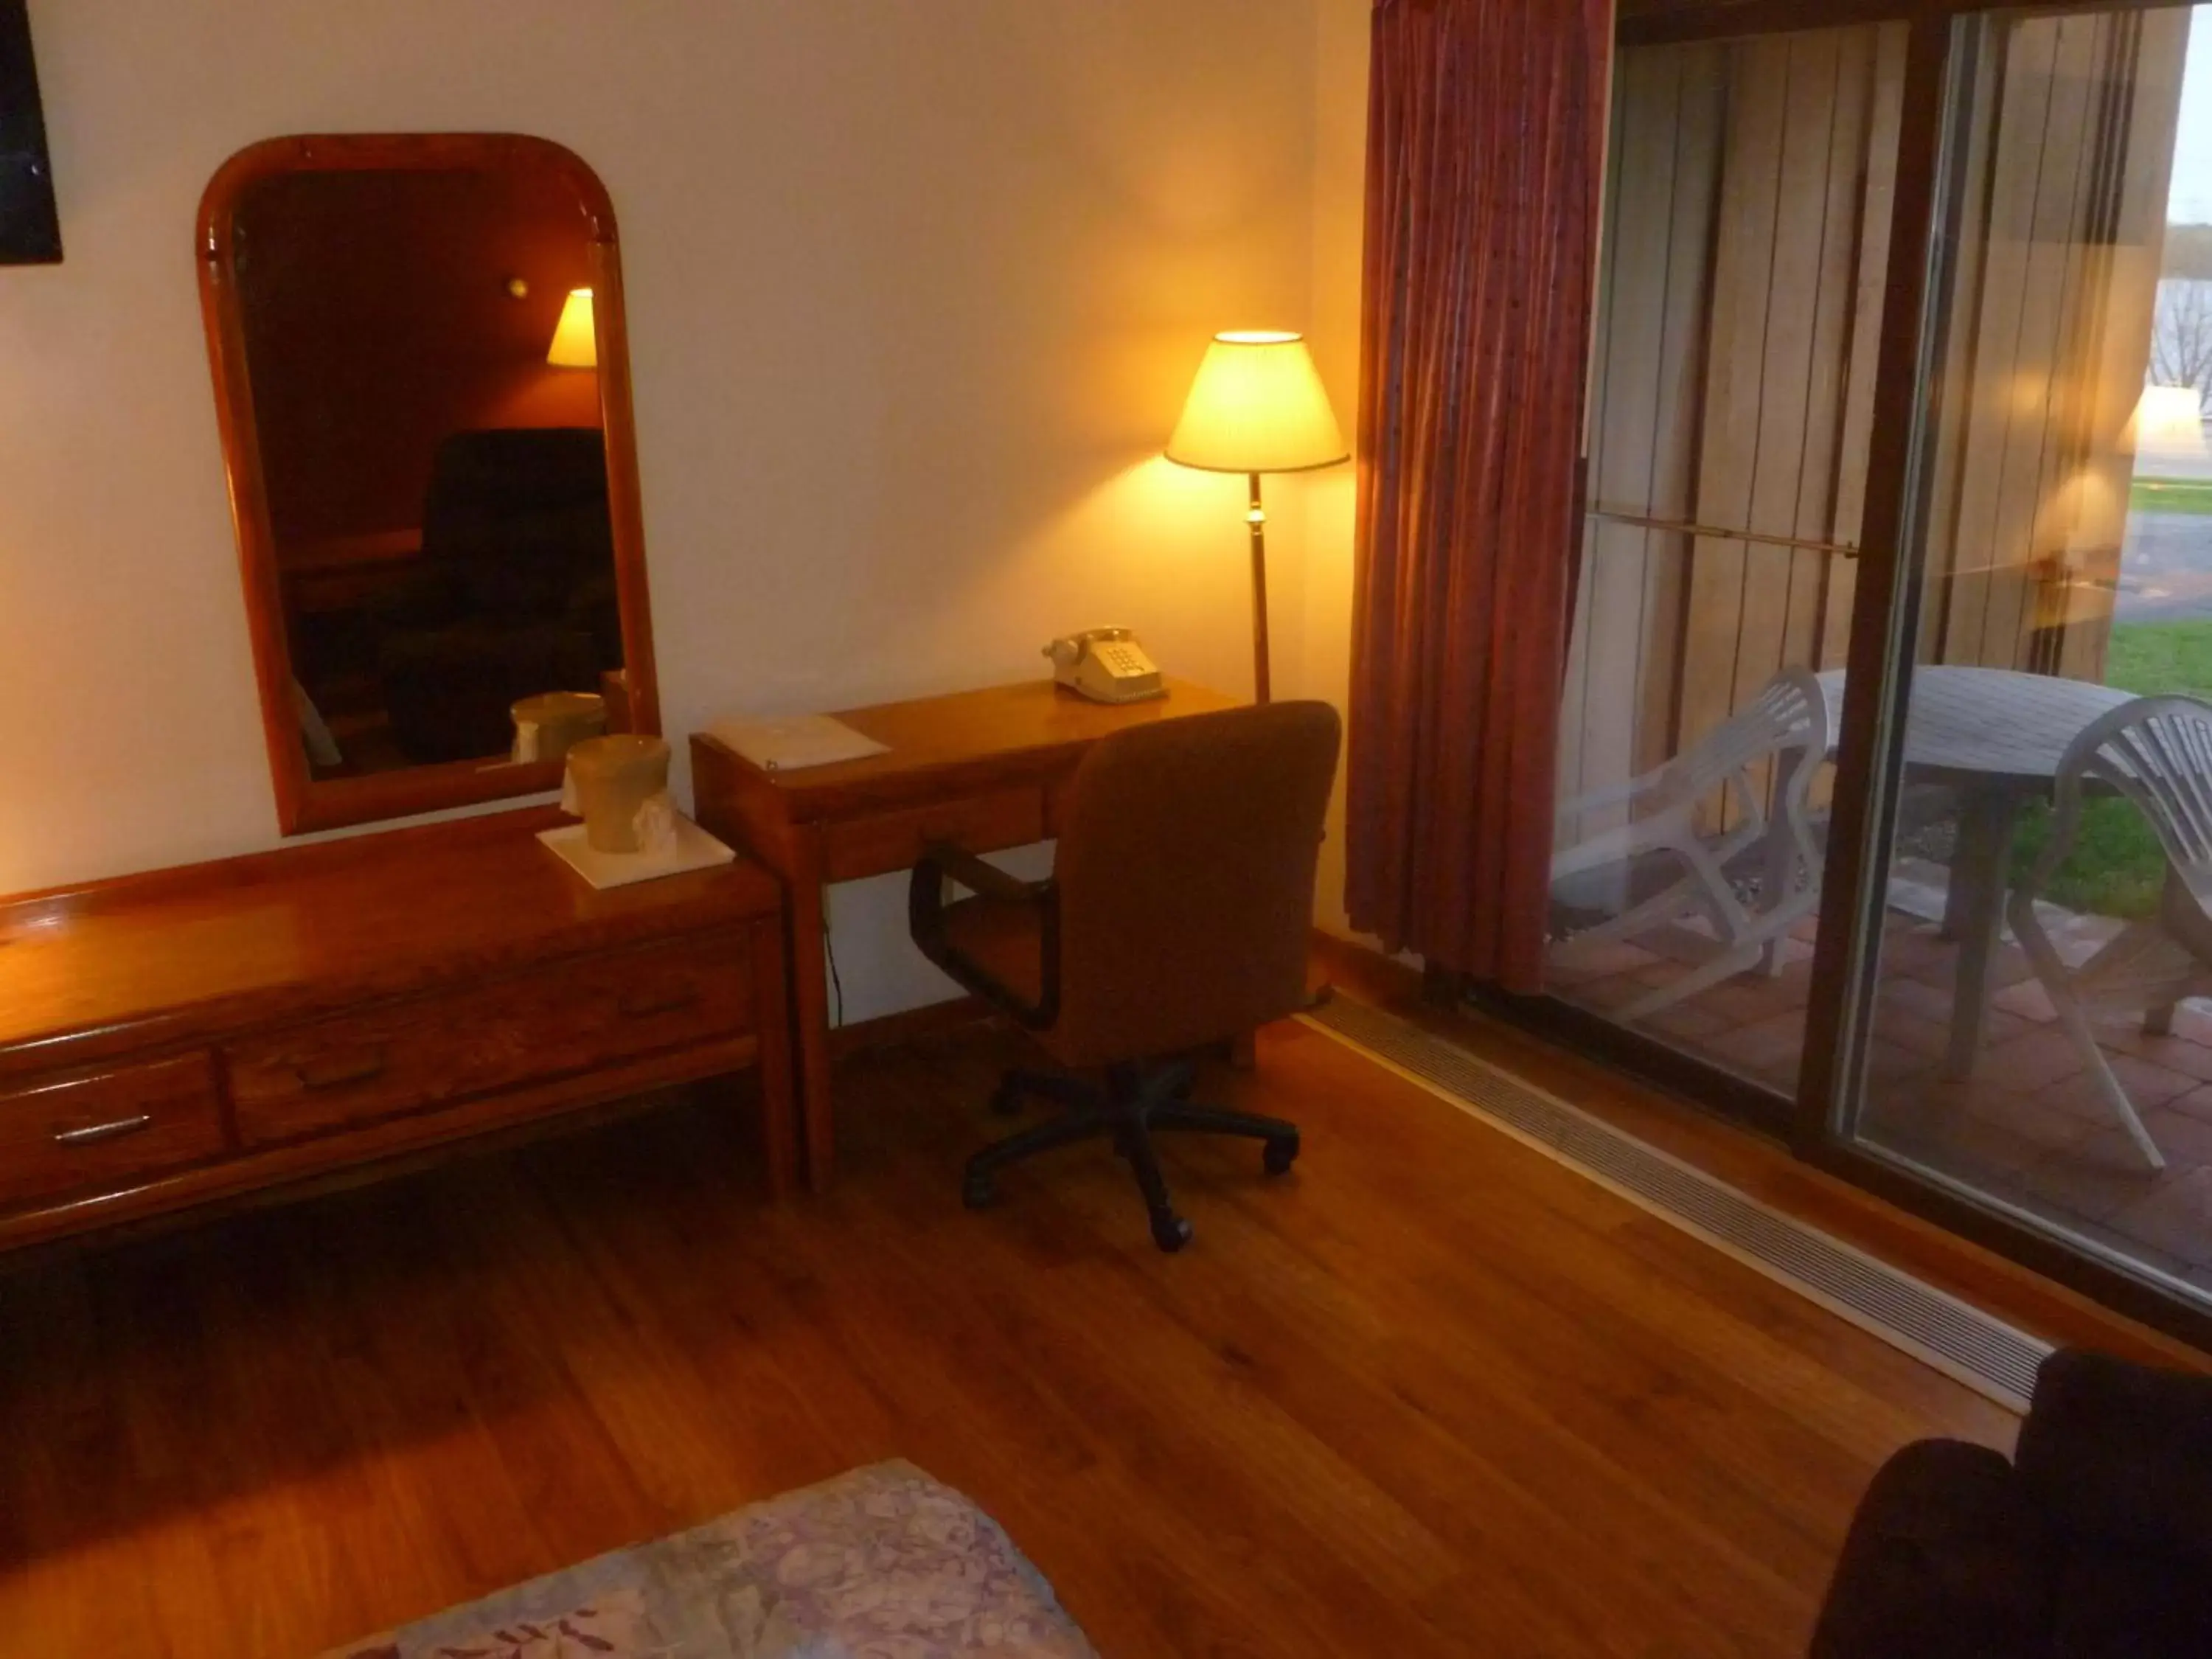 Bedroom, TV/Entertainment Center in Timber Inn Motel